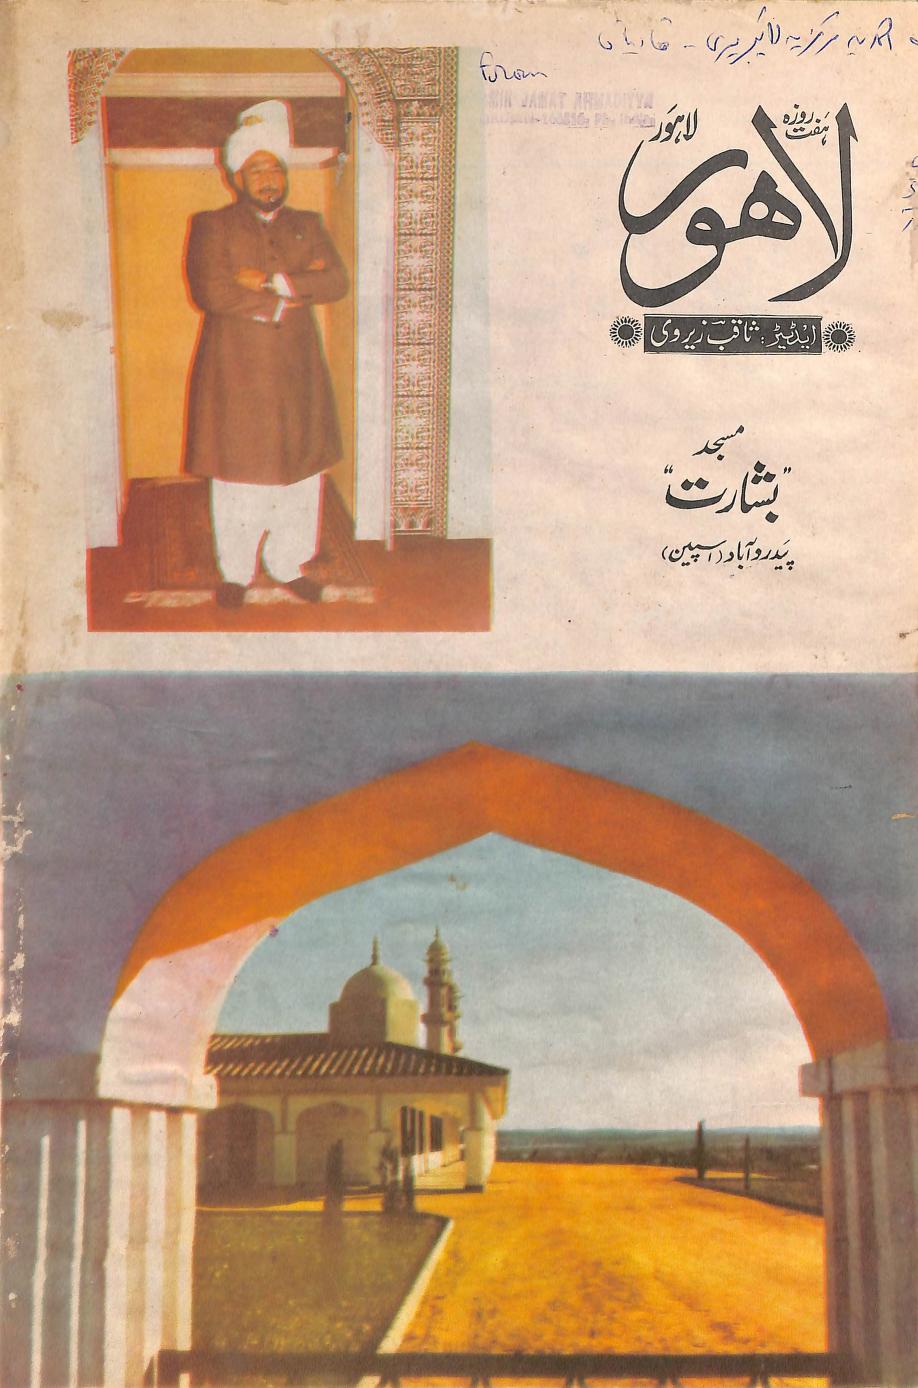 ہفت روزہ لاہور 1982 سپیشل ایڈیشن ثاقب زیروی